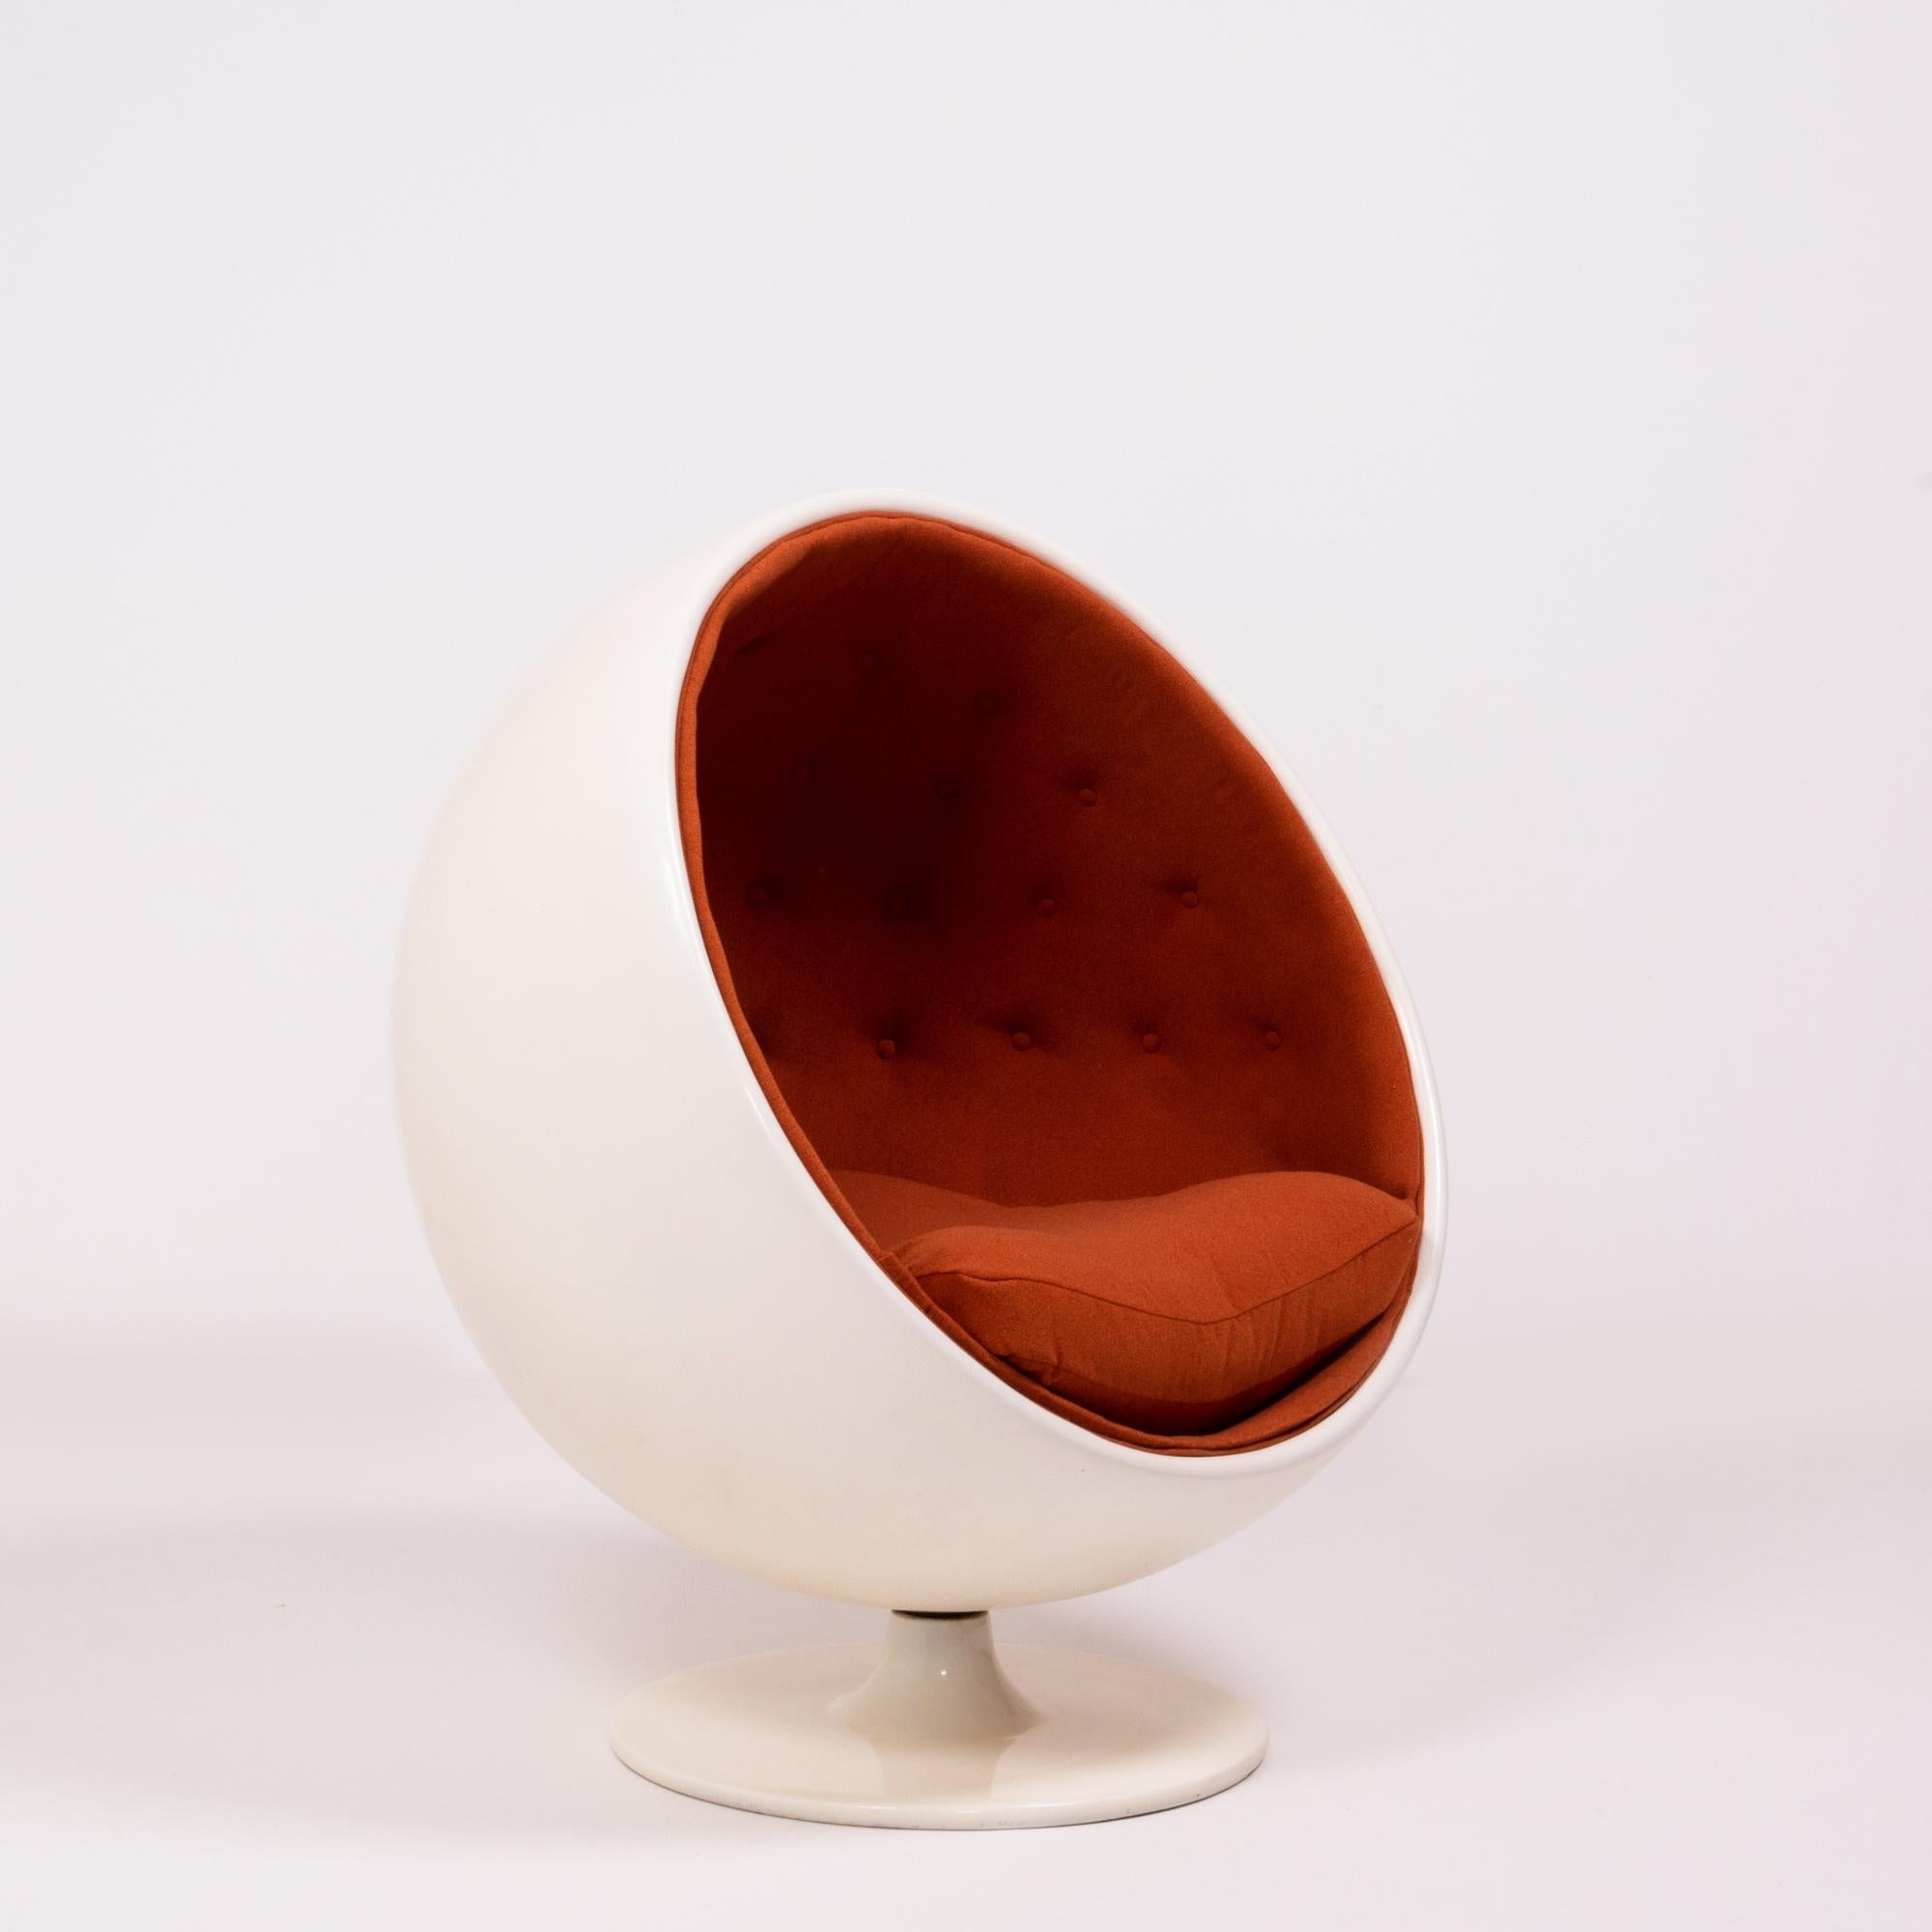 Der 1963 von Eero Aarnio entworfene Ball Chair wurde erstmals 1966 auf der Kölner Möbelmesse präsentiert und ist seitdem ein Stück Designgeschichte. 

Der aus weißem Fiberglas nach dem Vorbild von Eero Aarnio gefertigte Kugelstuhl hat eine